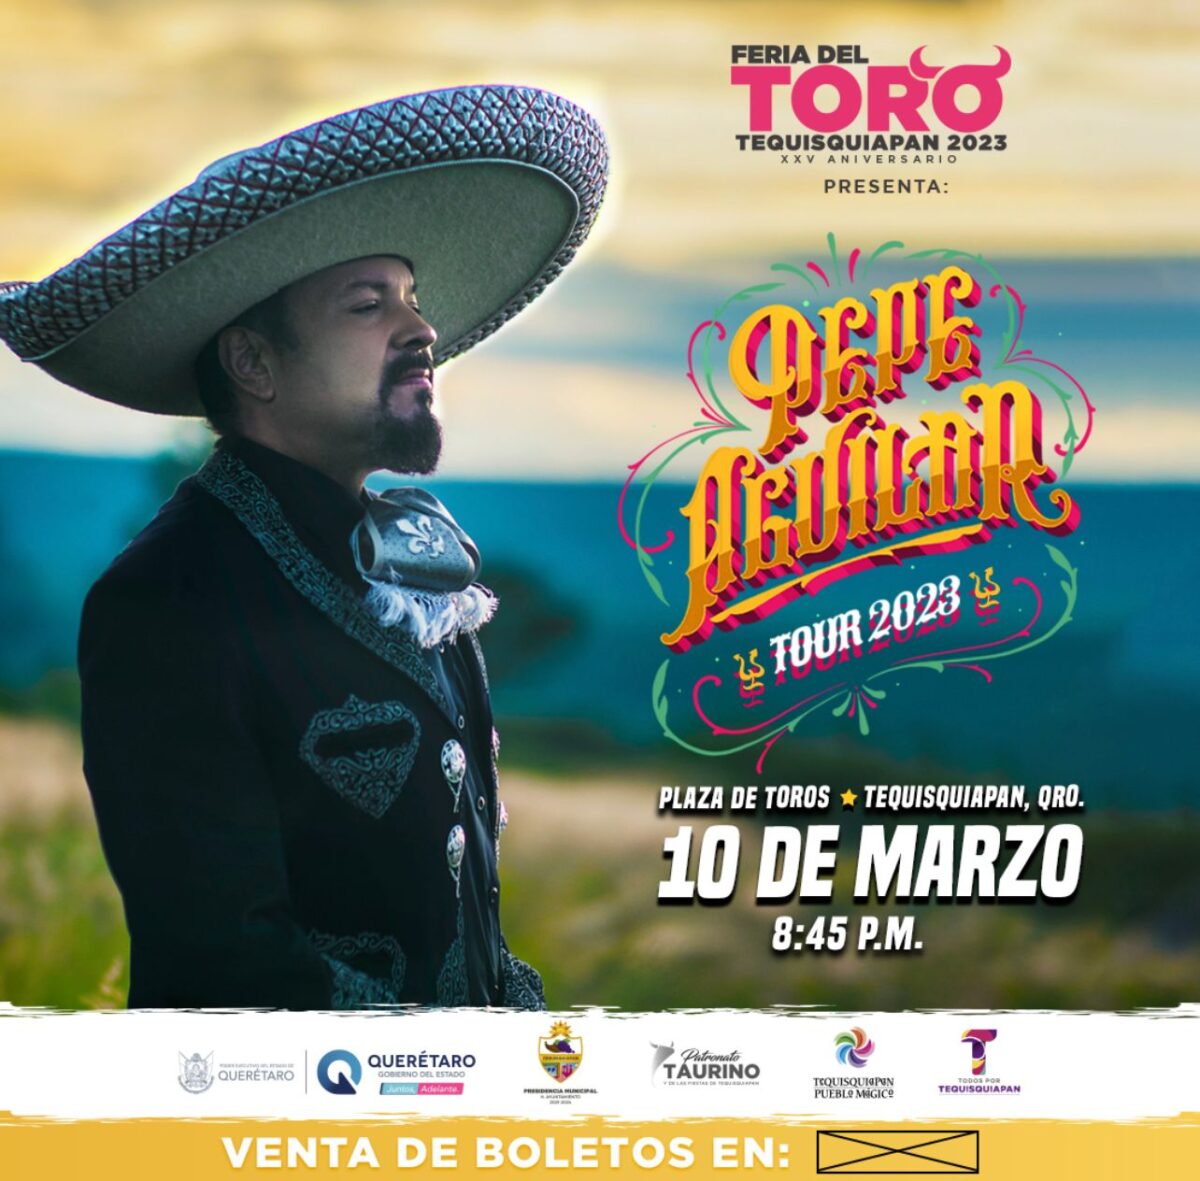 Se presentará Pepe Aguilar en la Feria del Toro de Tequisquiapan